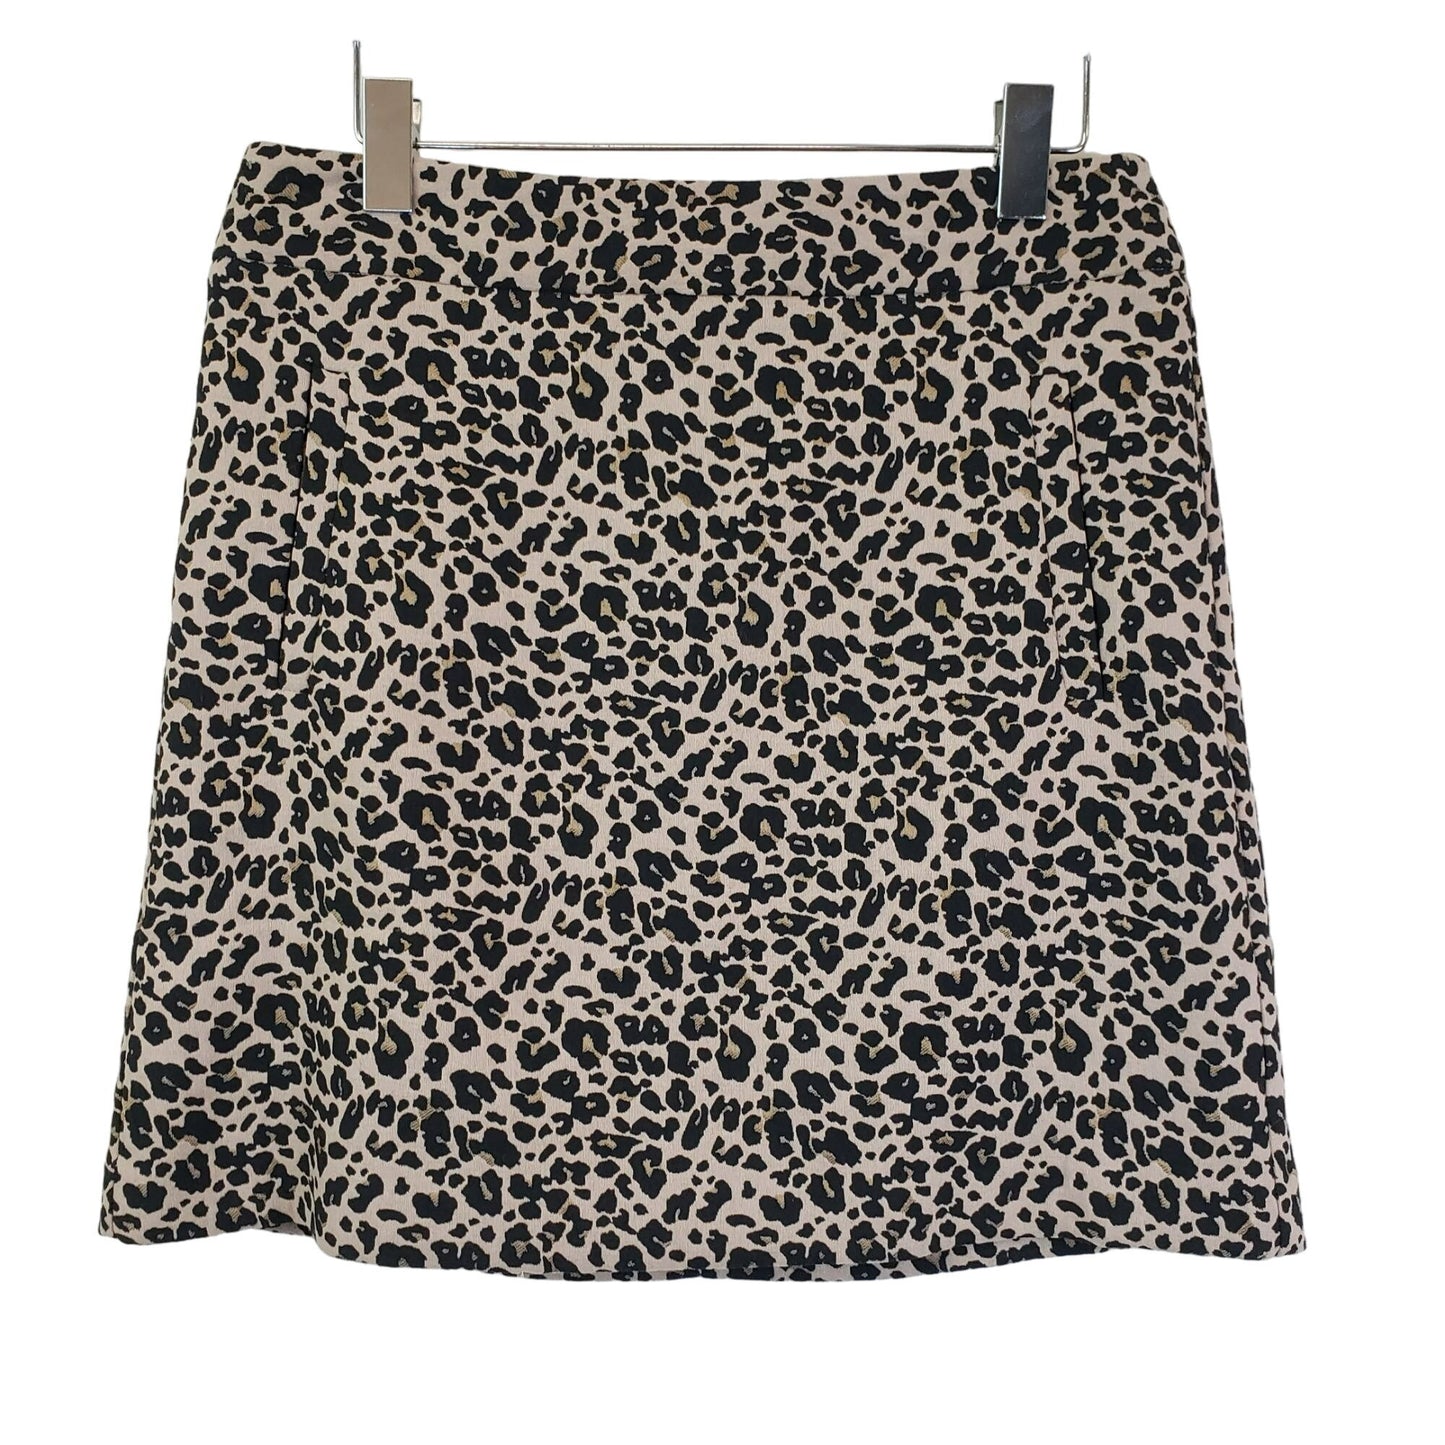 Loft Leopard Print Mini Skirt Size 6